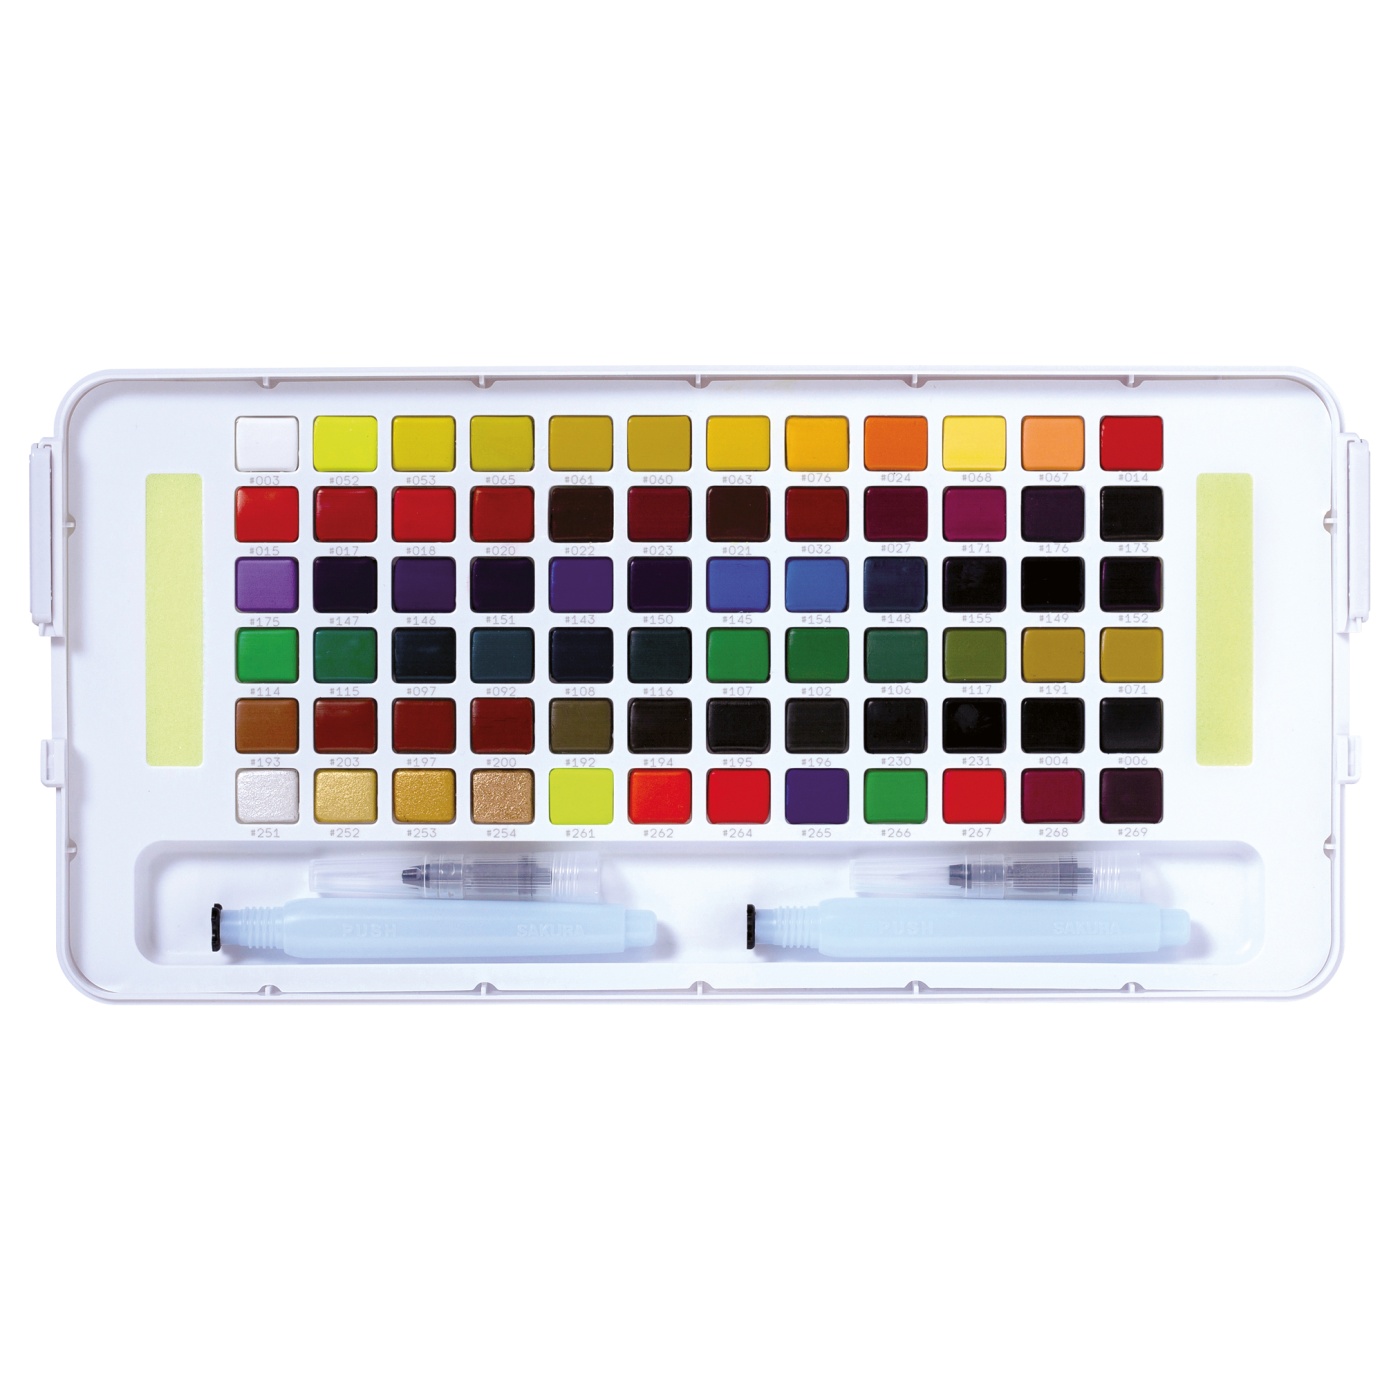 Koi Water Colors Sketch Box 72 i gruppen Kunstnerartikler / Farver / Akvarelfarver hos Pen Store (103857)